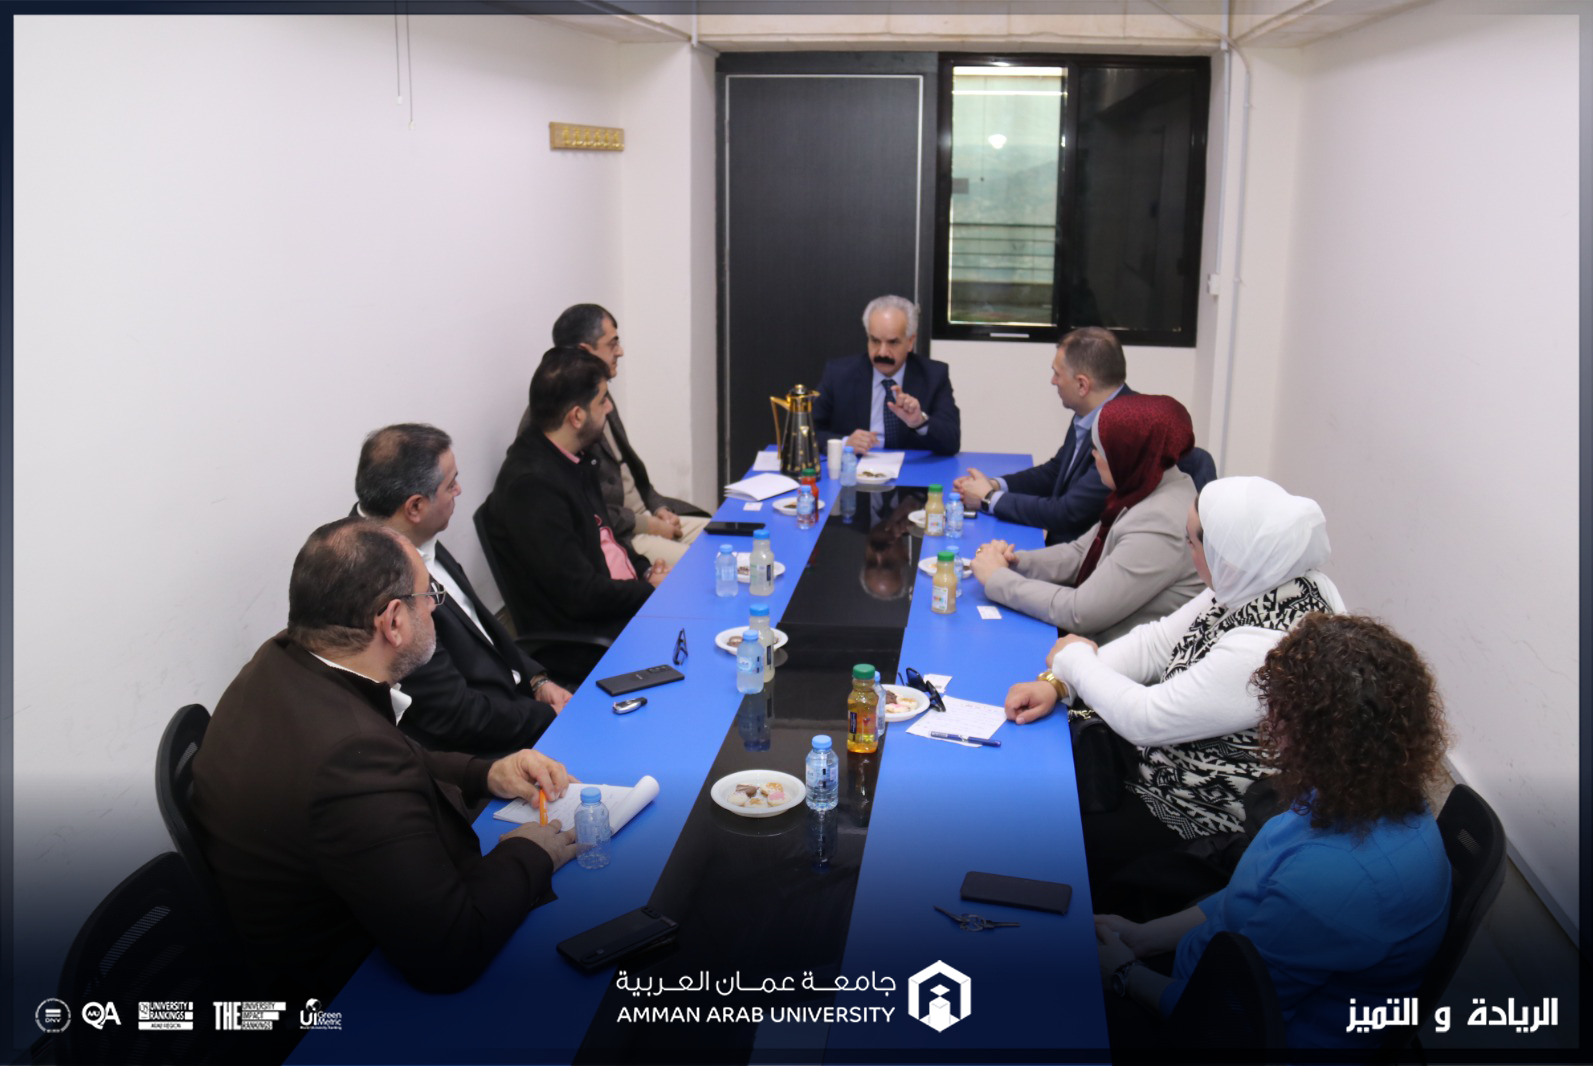 اجتماع المجلس الاستشاري لكلية الأعمال في "عمّان العربية"